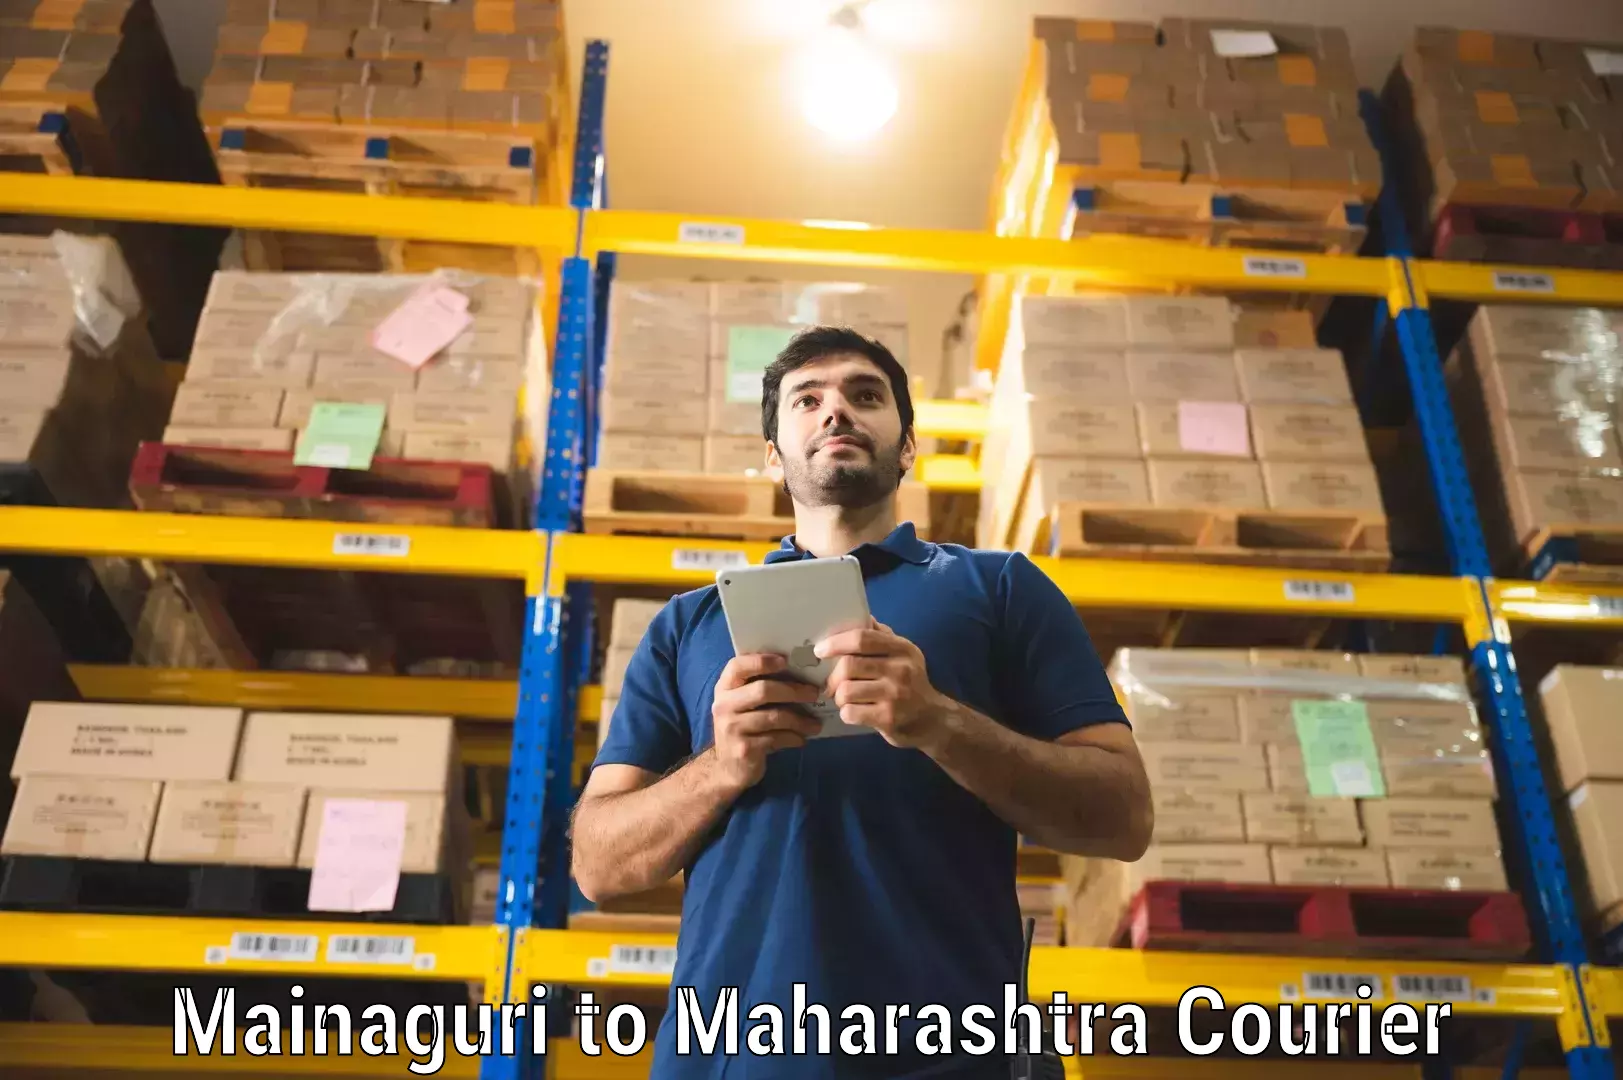 Local delivery service Mainaguri to Maharashtra